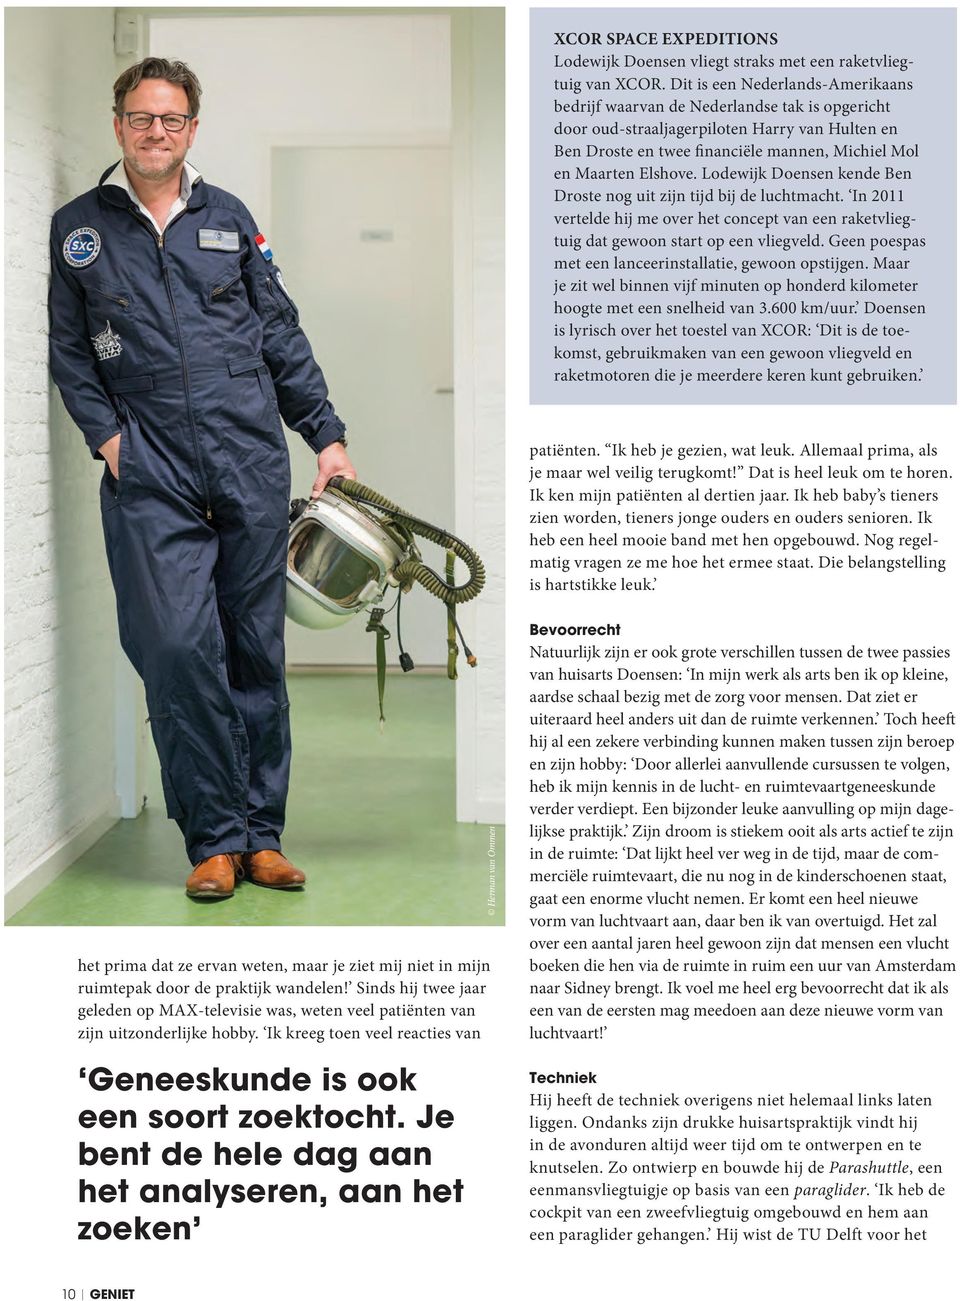 Lodewijk Doensen kende Ben Droste nog uit zijn tijd bij de luchtmacht. In 2011 vertelde hij me over het concept van een raketvliegtuig dat gewoon start op een vliegveld.